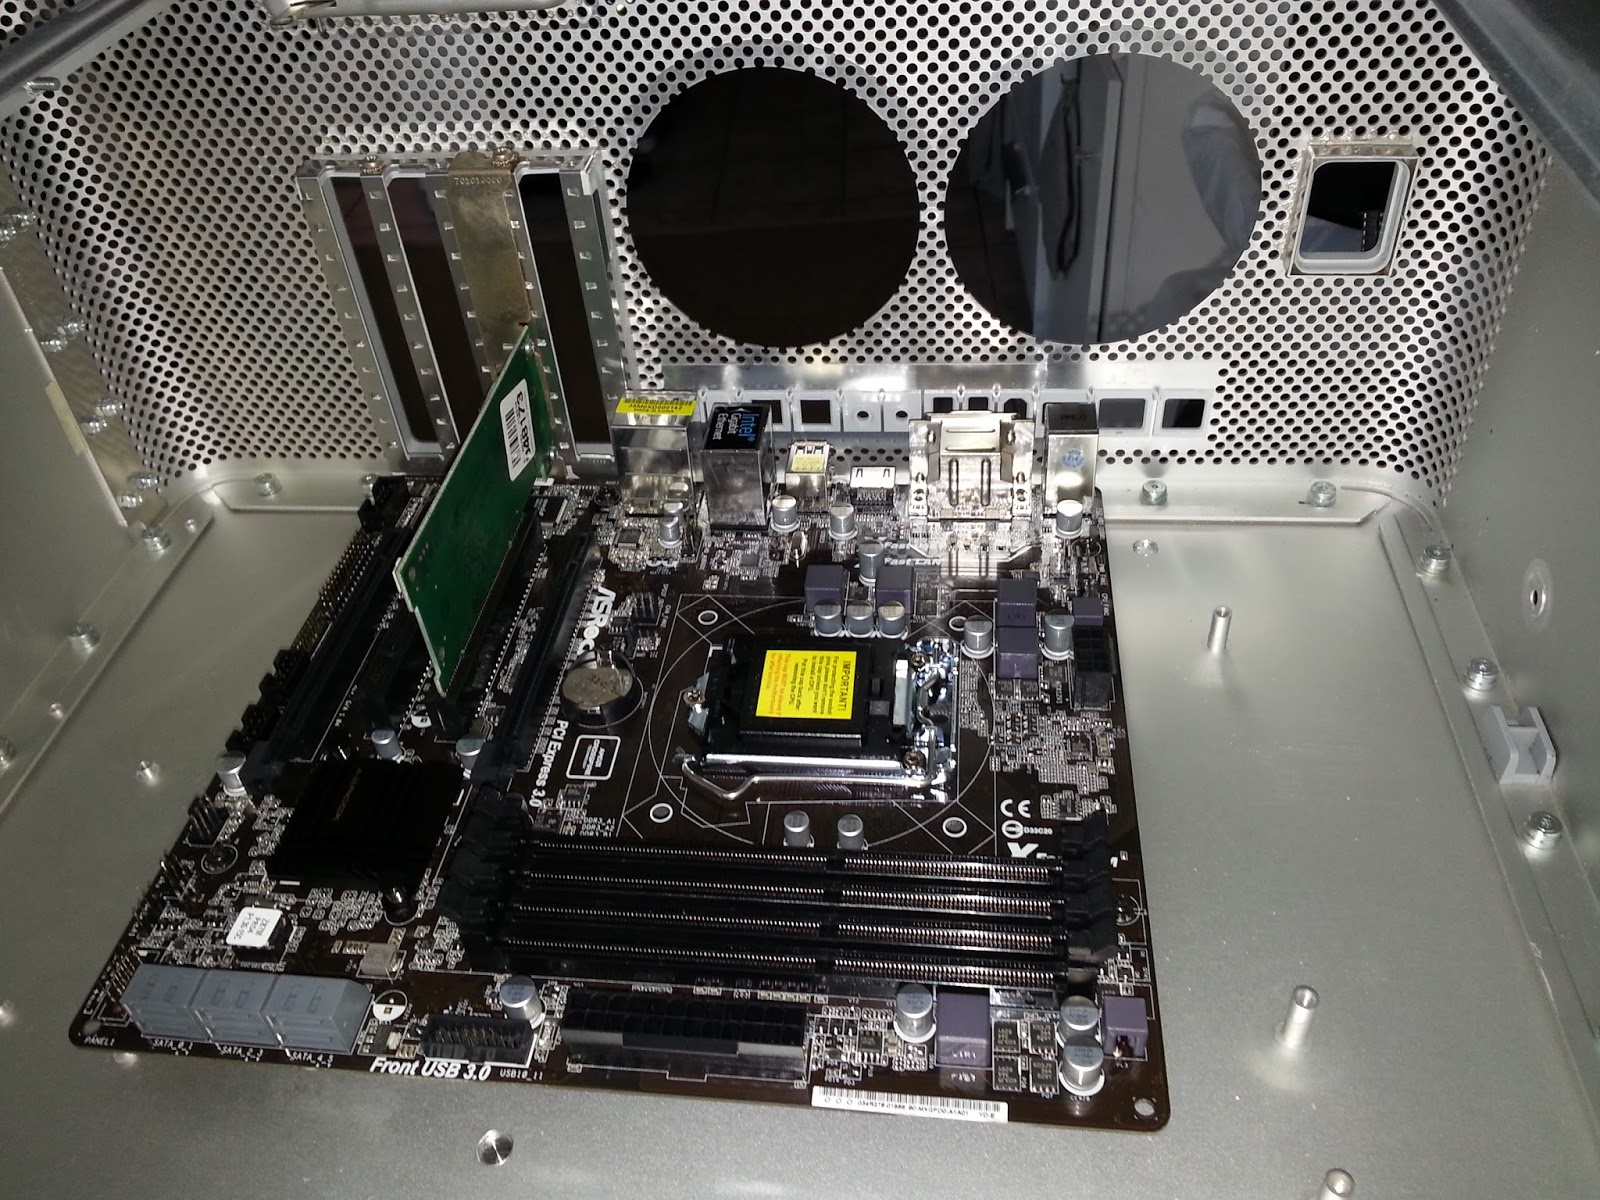 dual cpu motherboard in a power mac g5 case